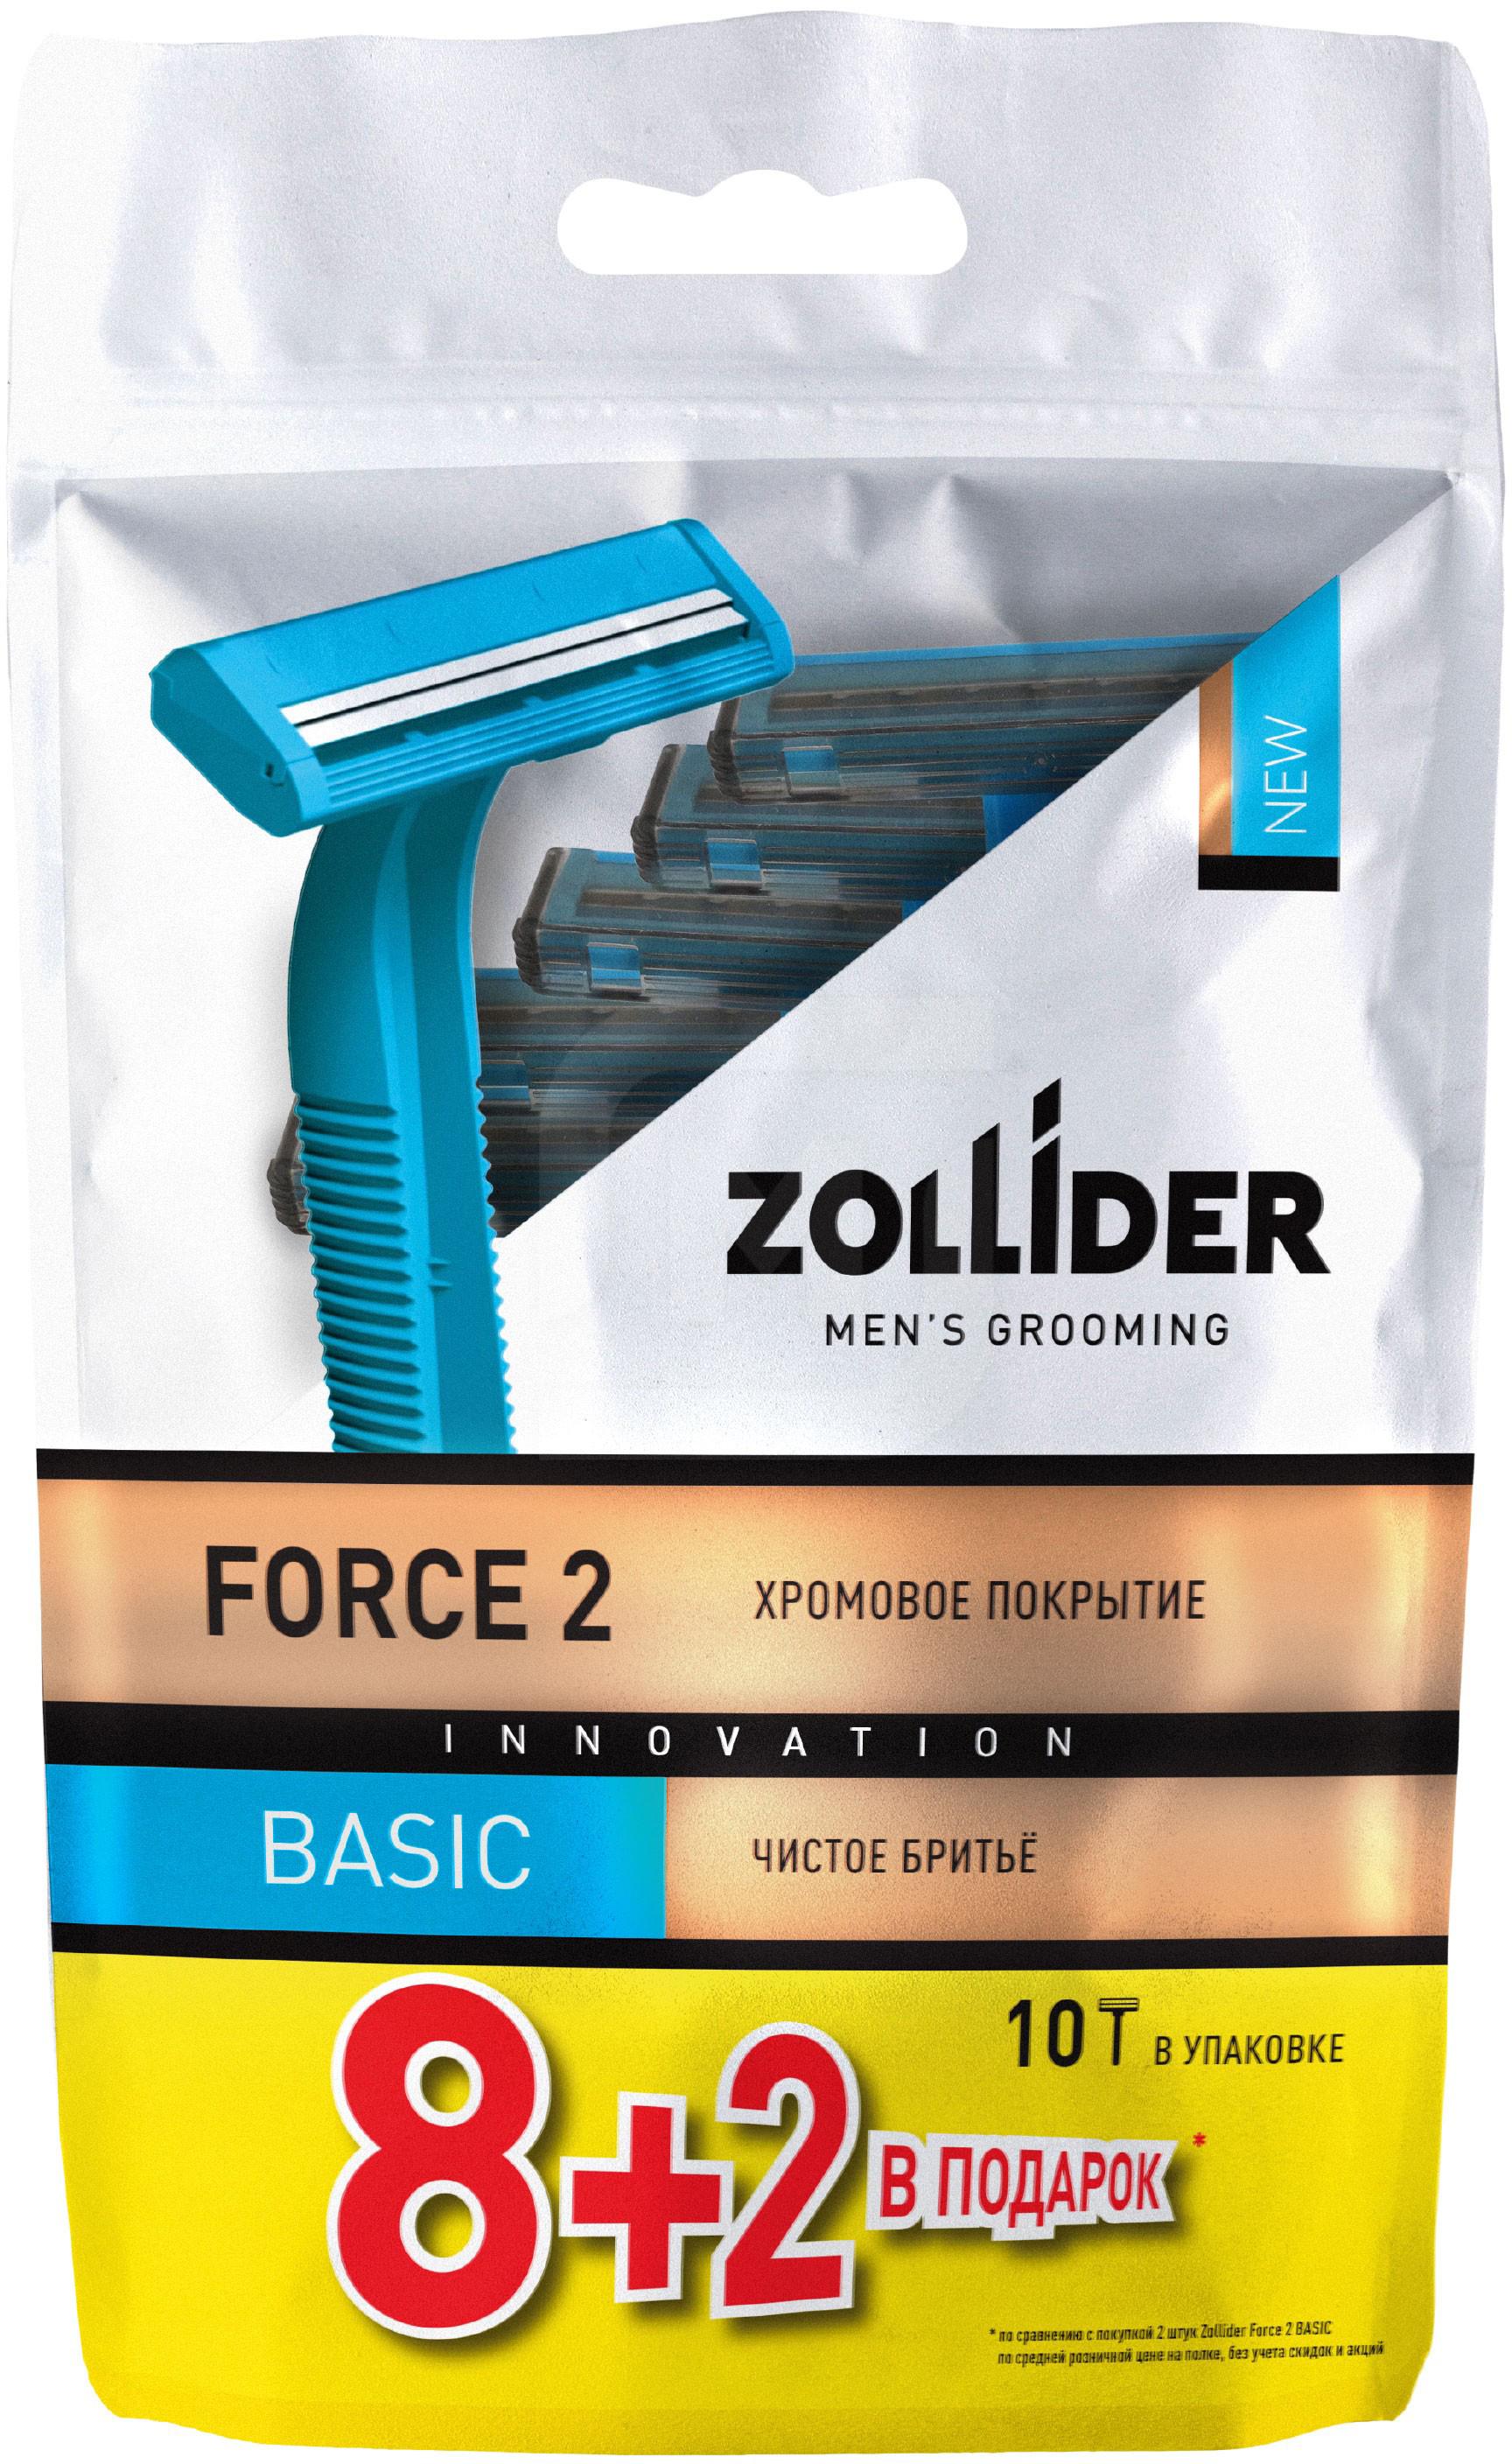 Бритвенные станки мужские Zollider Force 2 Basic одноразовые с двойными лезвиями 8 + 2 шт бритвенные станки мужские zollider force 2 basic одноразовые с двойными лезвиями 8 2 шт